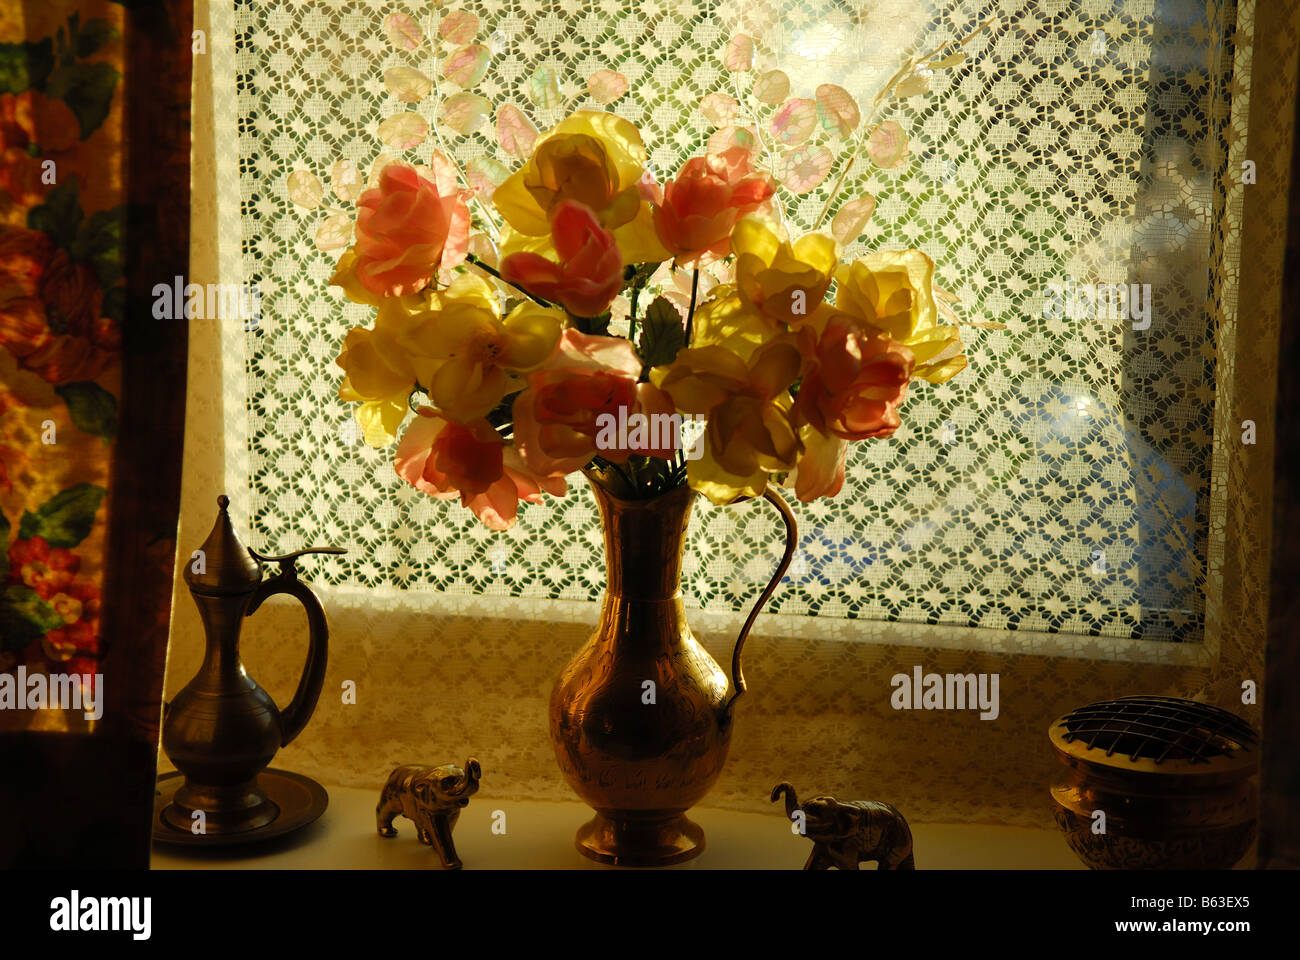 Plastic Flowers in Vase. Stock Photo